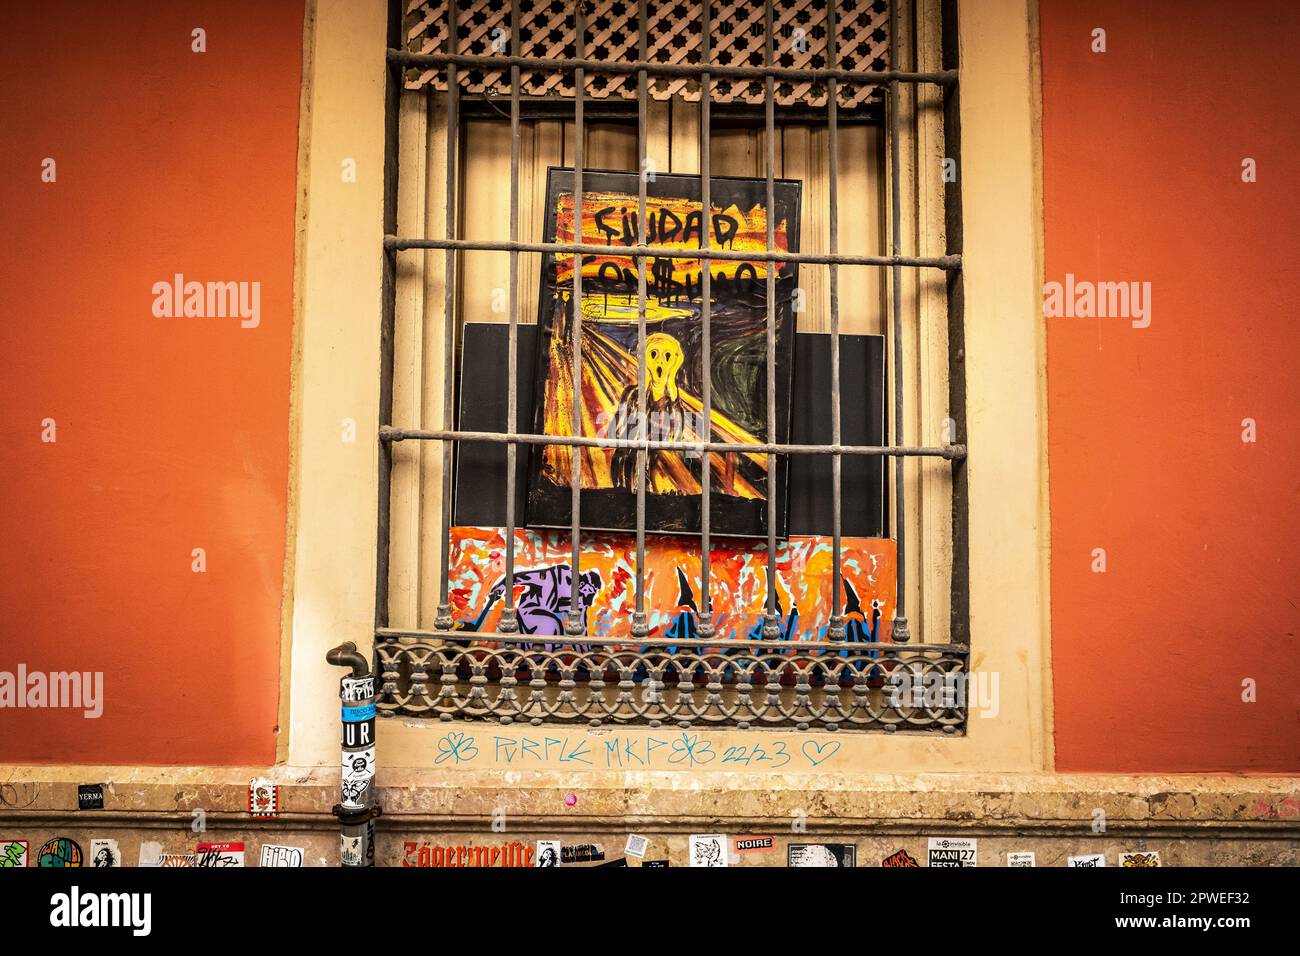 Málaga, Spagna - 'Ciudad con$umo,' poster in una finestra, overtourism, turismo di massa, consumismo Foto Stock